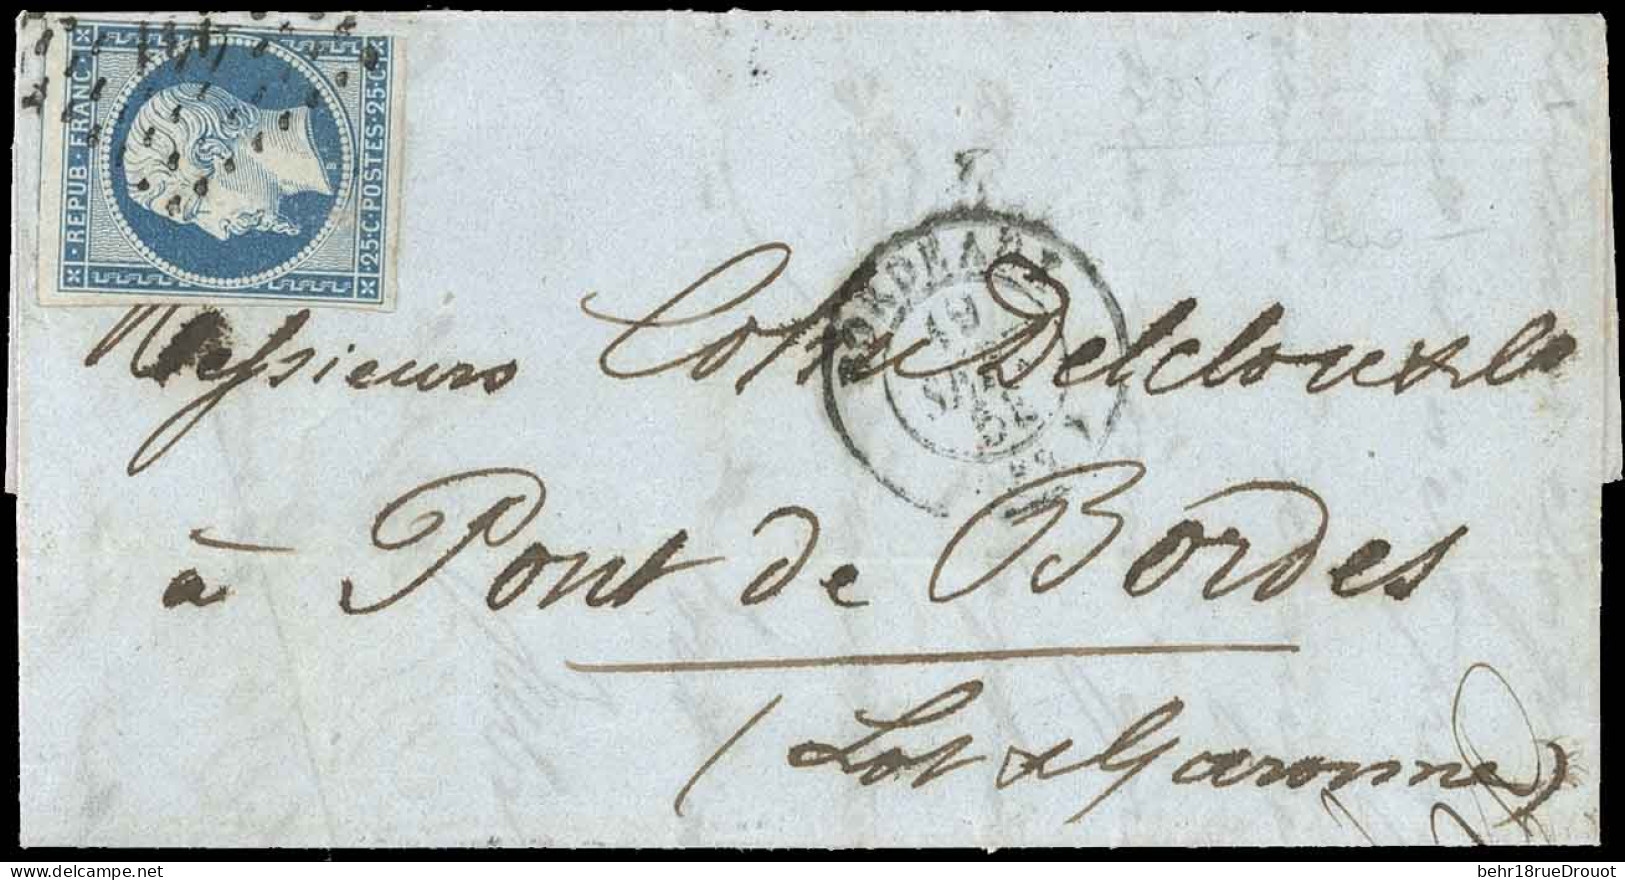 Obl. 10 - 25c. Bleu (déf.) Obl. PC 441, S/lettre Frappée Du CàD De BORDEAUX Du 19 Septembre 1853 Avec Cursive "45 PONT D - 1849-1850 Ceres